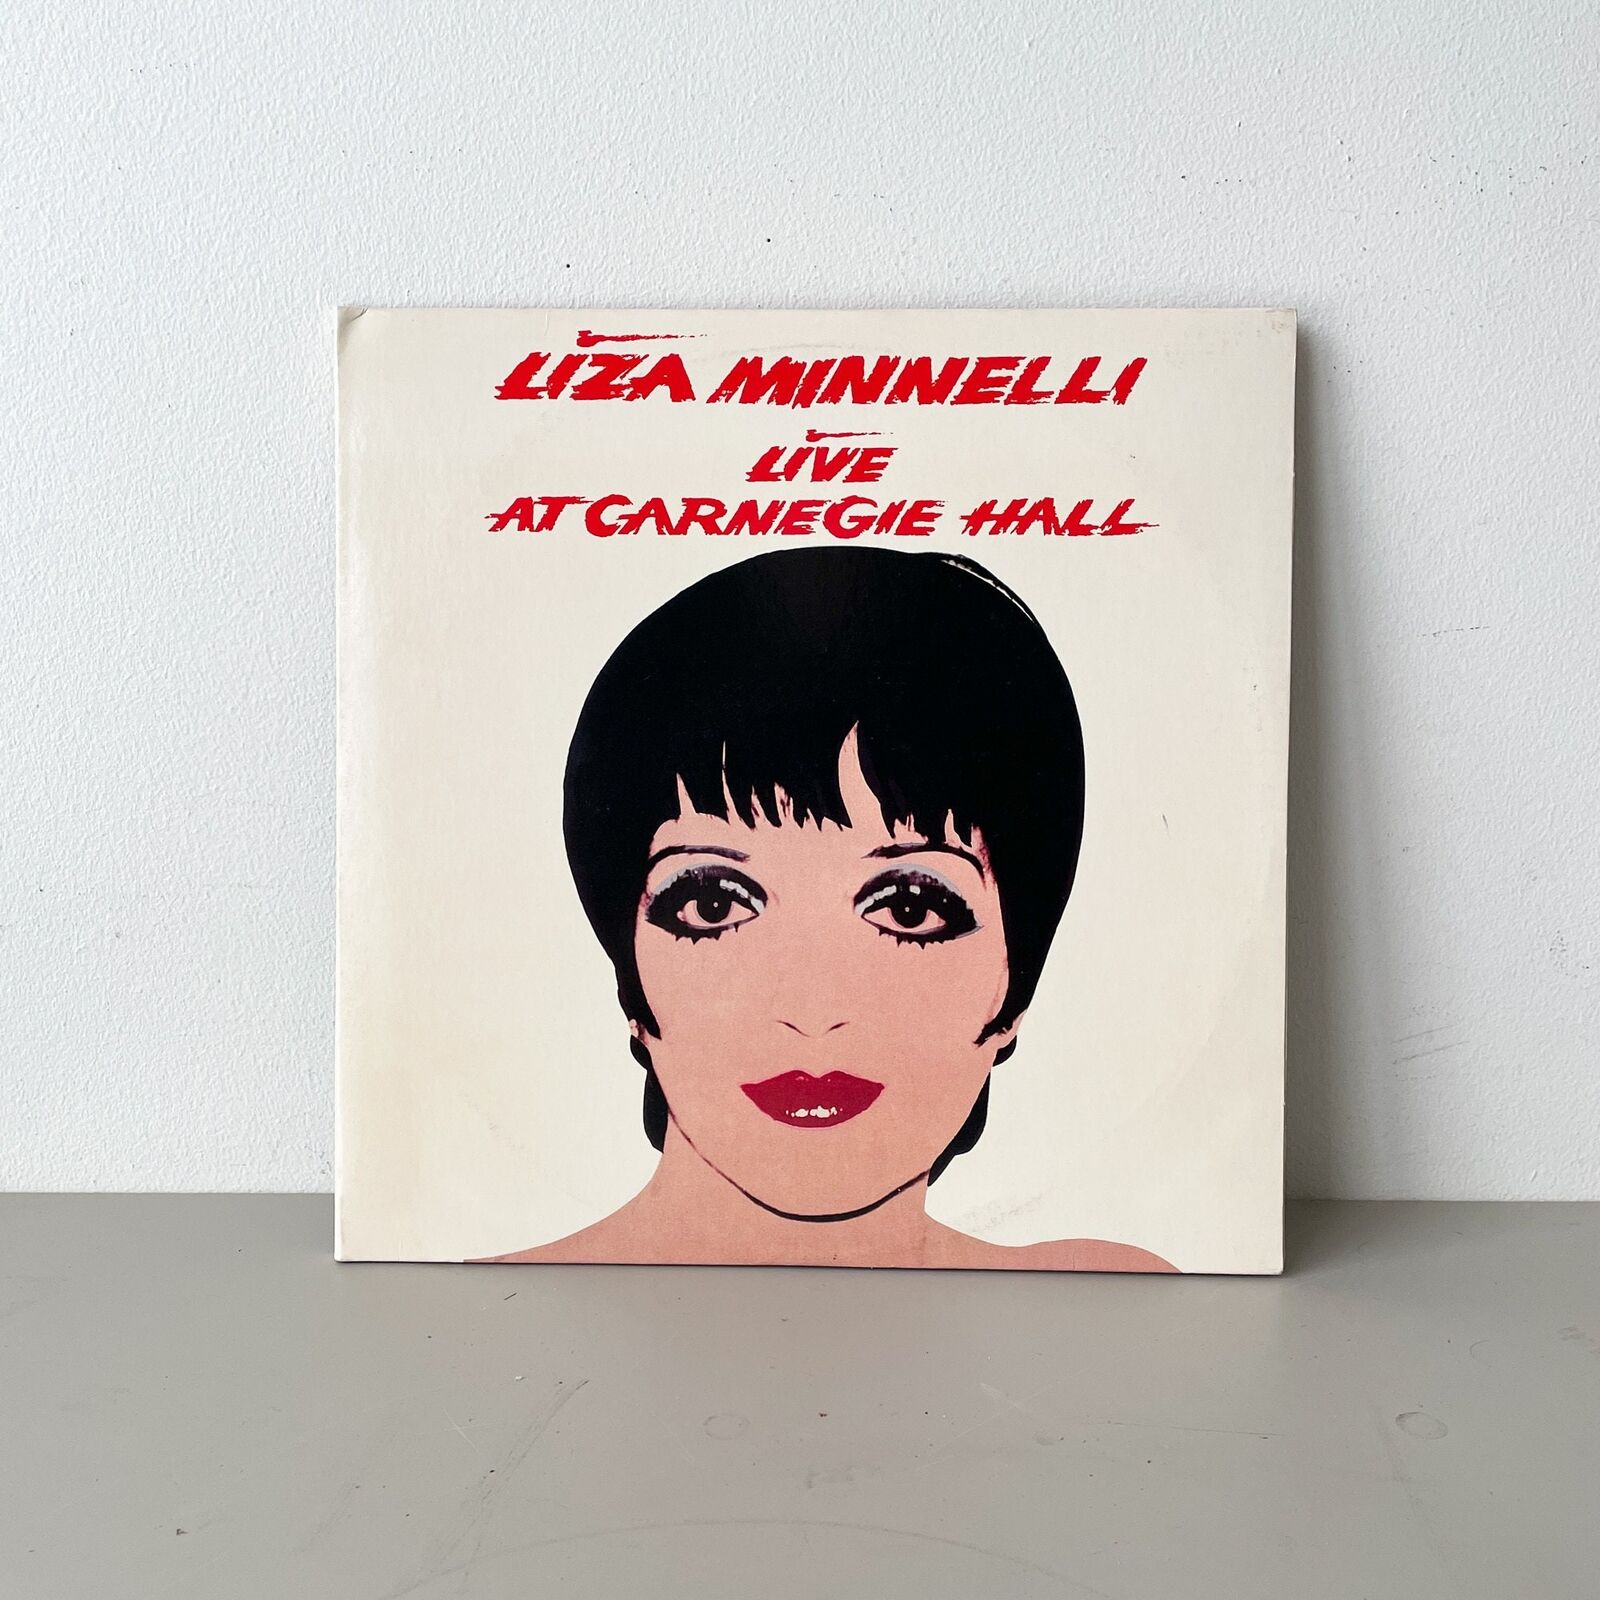 Liza Minnelli - Live At Carnegie Hall - Vinyl LP Record - 1981